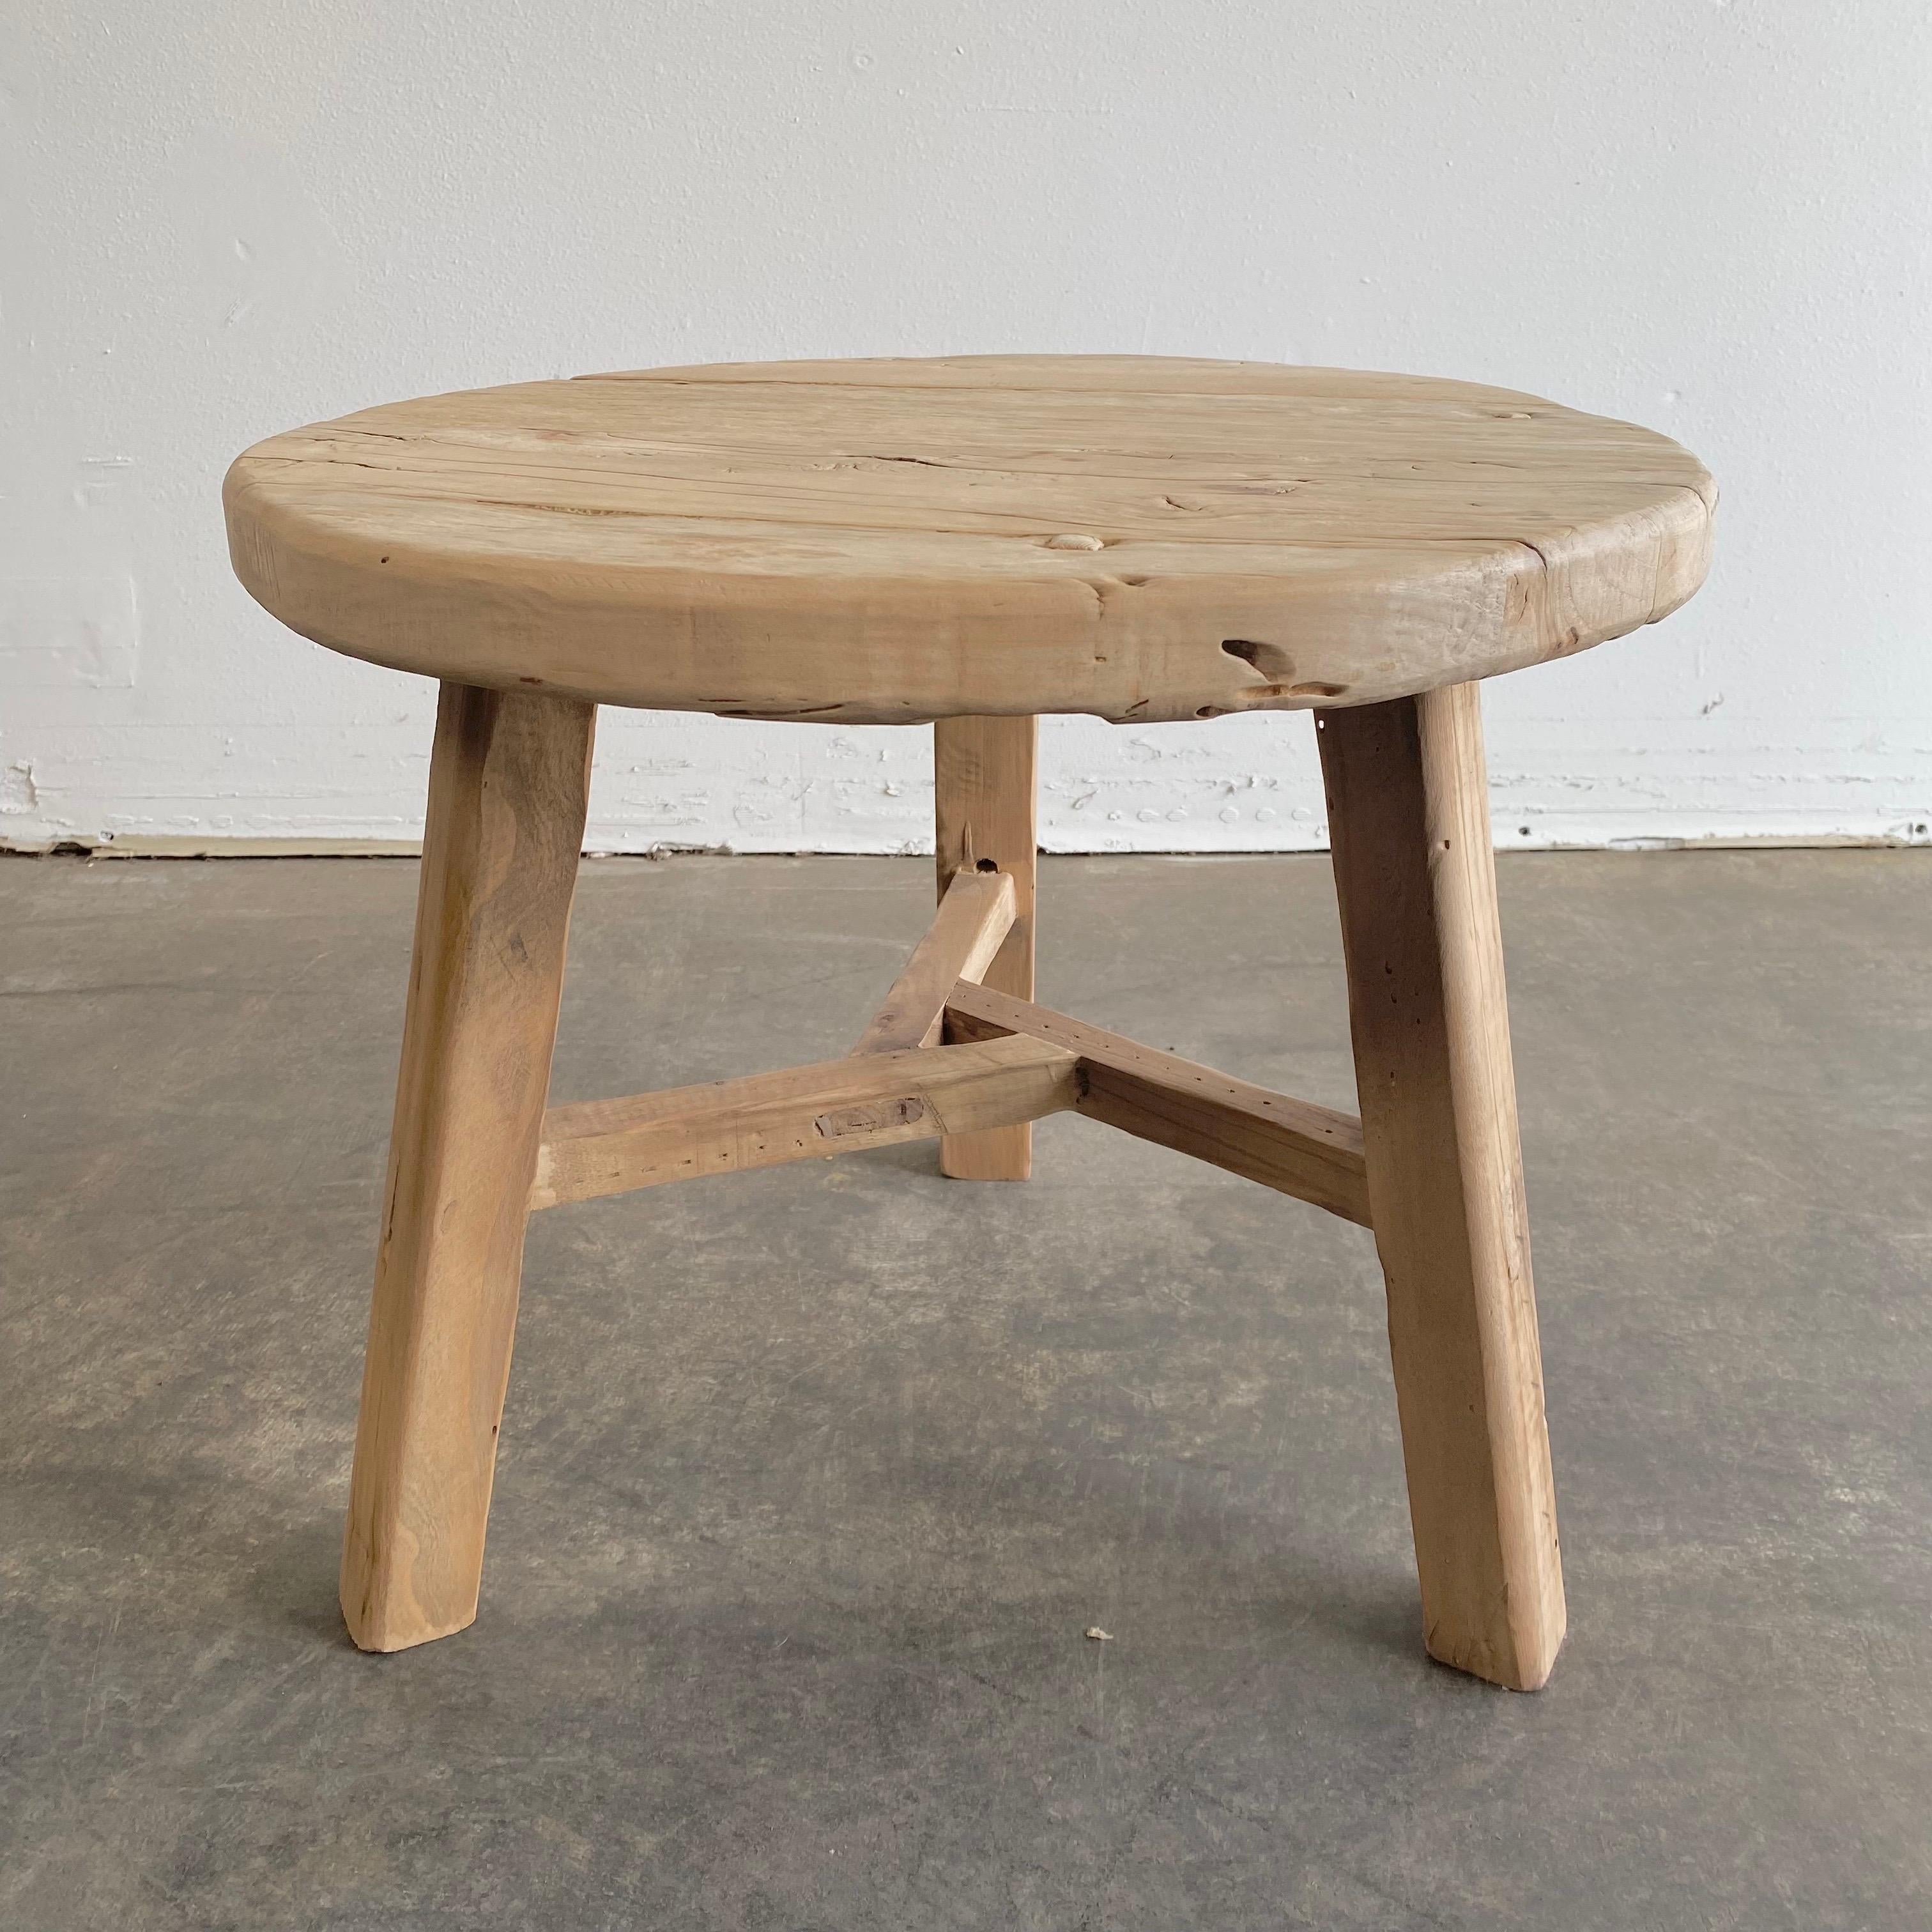 Table d'appoint ronde naturelle fabriquée à partir de bois d'orme récupéré. Finition naturelle brute, un miel chaud avec des tons gris dans le bois. Solide et robuste, une table d'appoint idéale à côté d'un lit, d'un canapé ou de chaises. Peut être